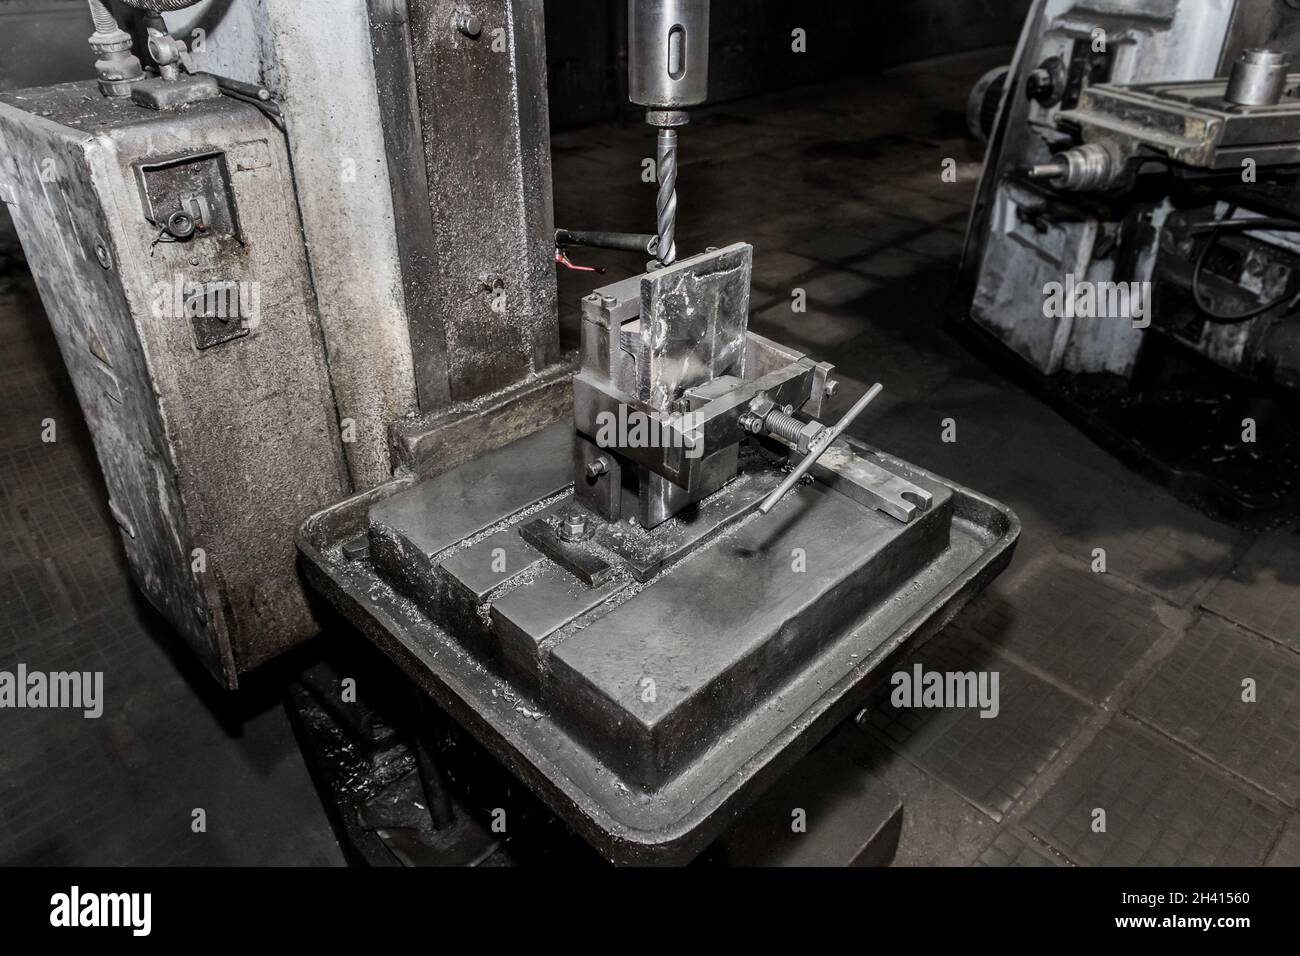 Processo e sistema, attrezzatura e utensile per la lavorazione dei metalli  con meccanismi di fissaggio per